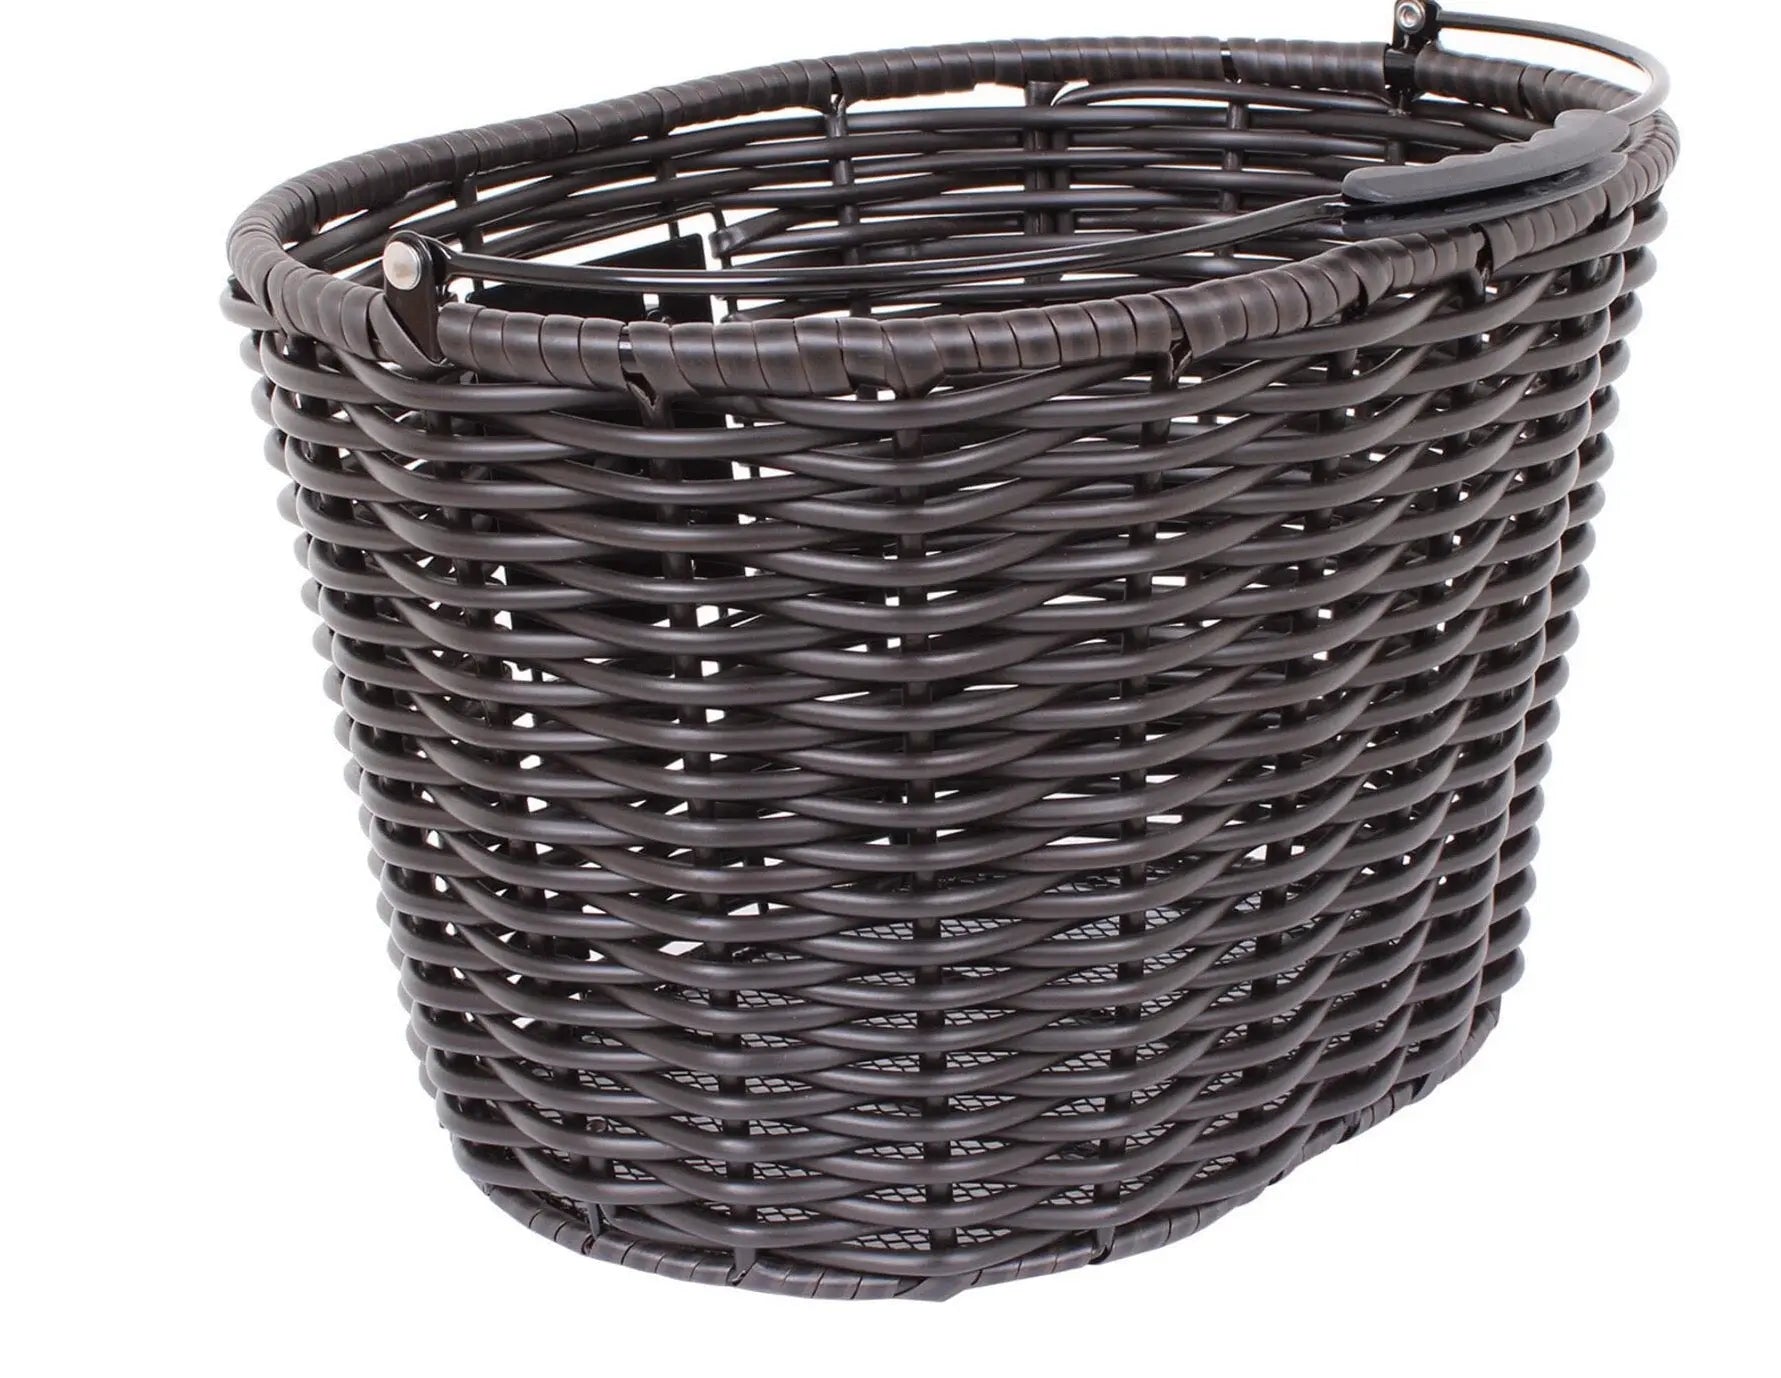 M-Part Stockbridge woven basket - handle and Quick Release Clip M-part